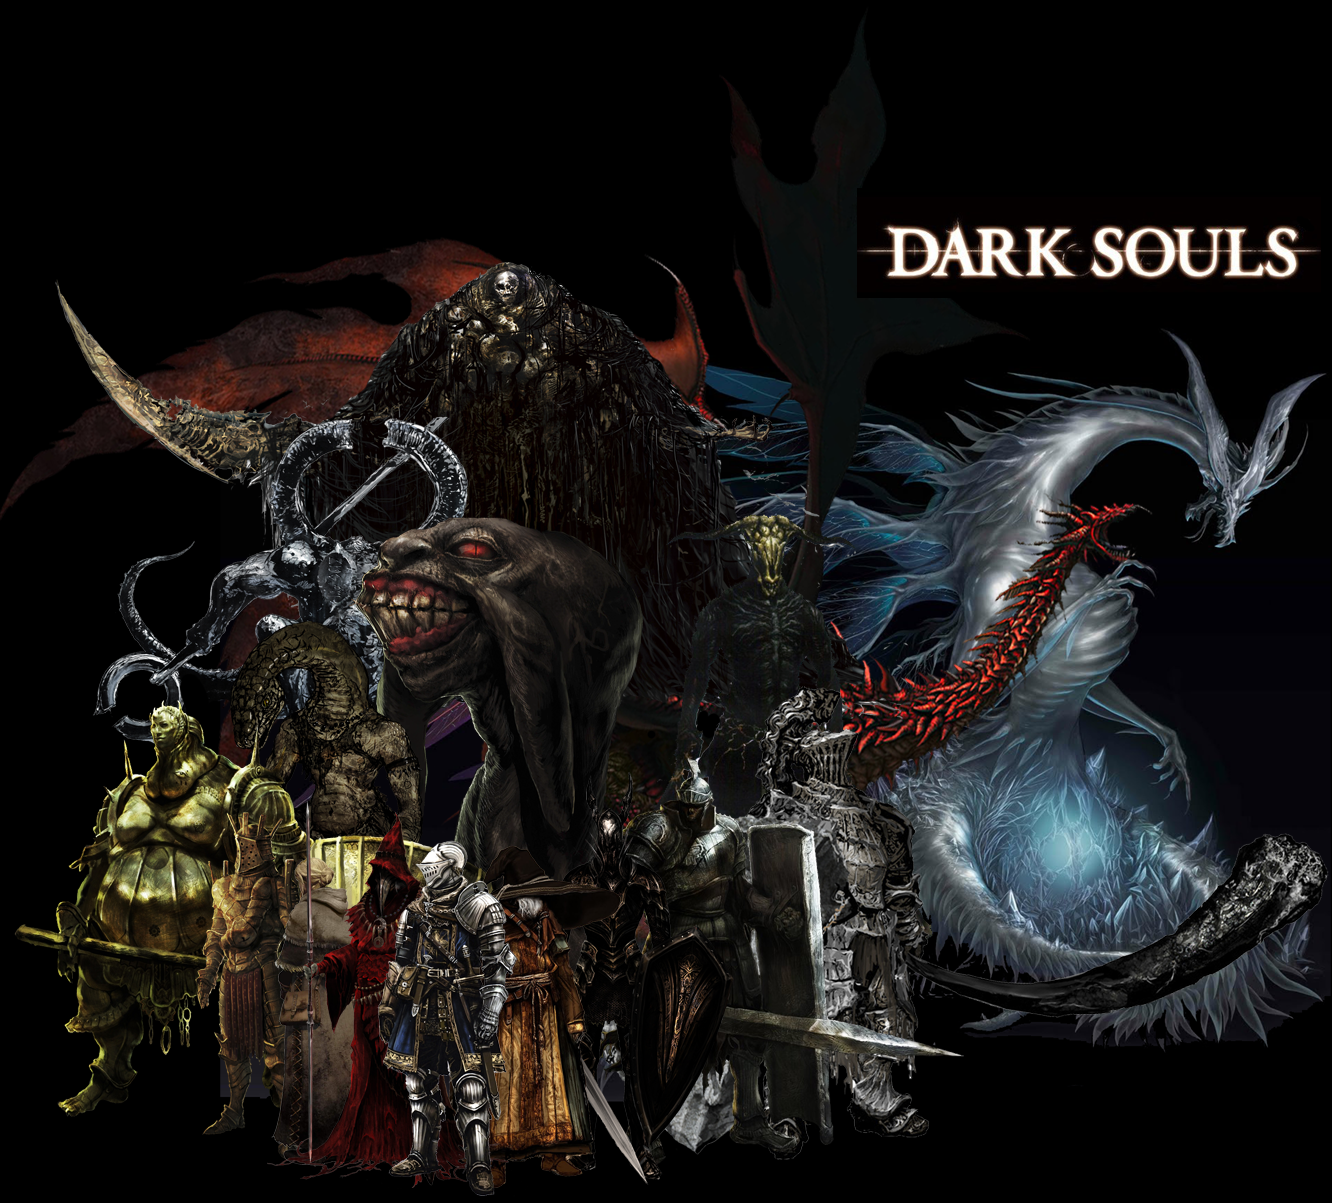 All Dark Souls bosses by DigitalCleo on DeviantArt